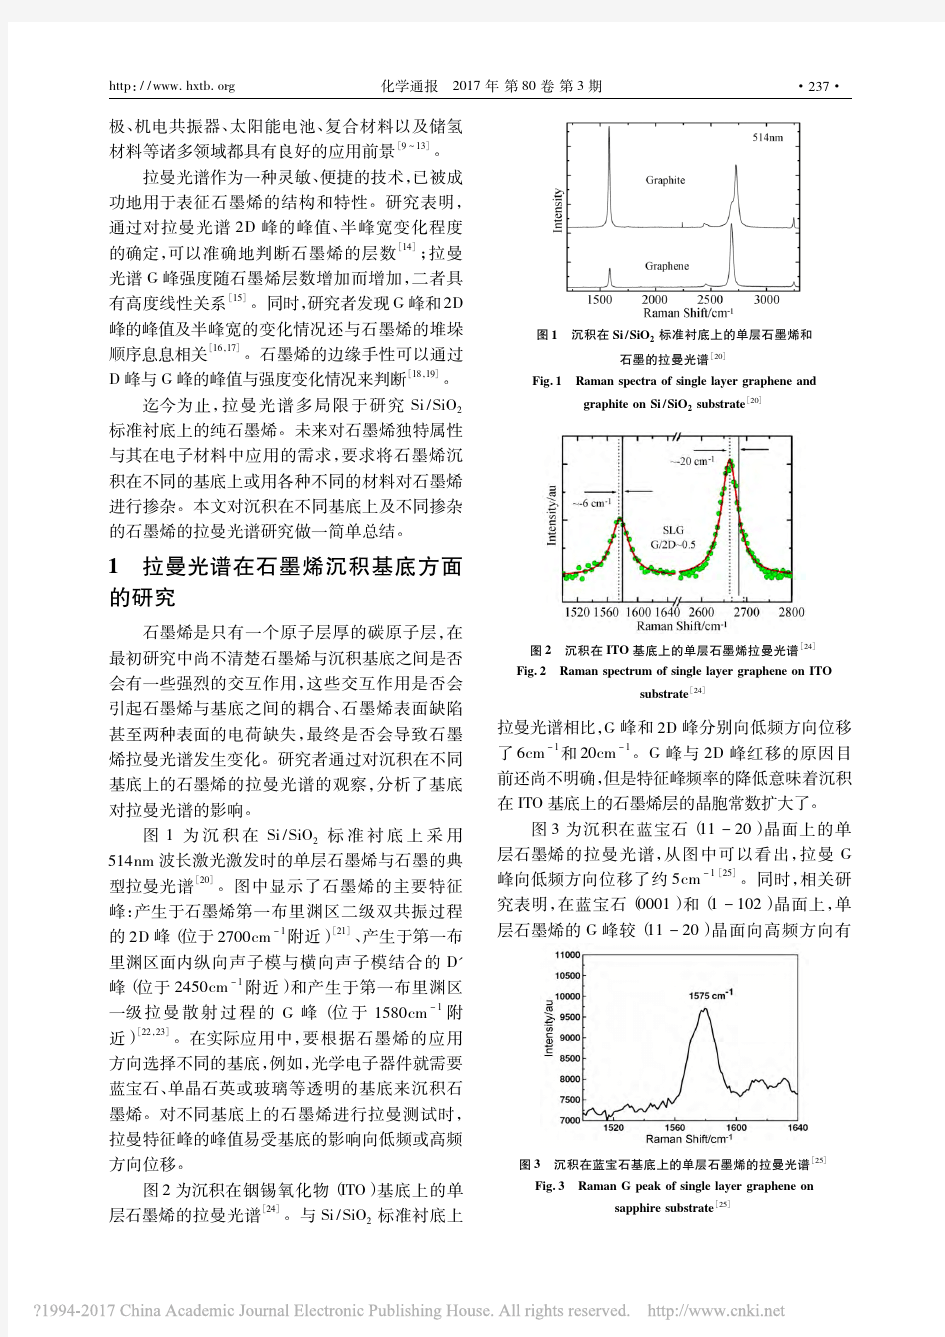 拉曼光谱表征石墨烯材料研究进展_李坤威 2017